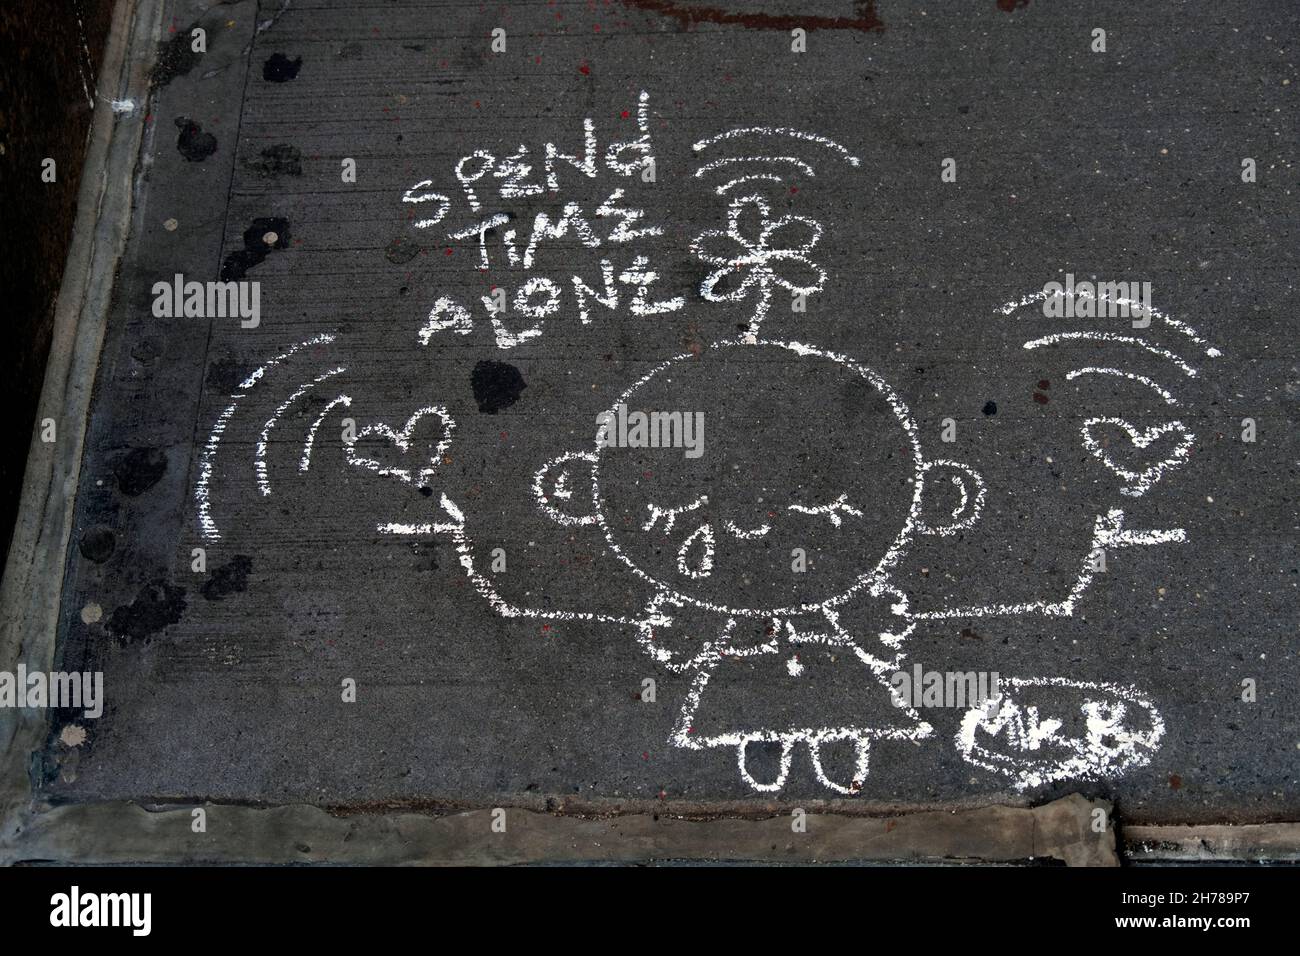 Eine Kreidezeichnung auf einem Bürgersteig in Greenwich Village deutet darauf hin, dass wir Zeit allein verbringen. In New York City. Stockfoto